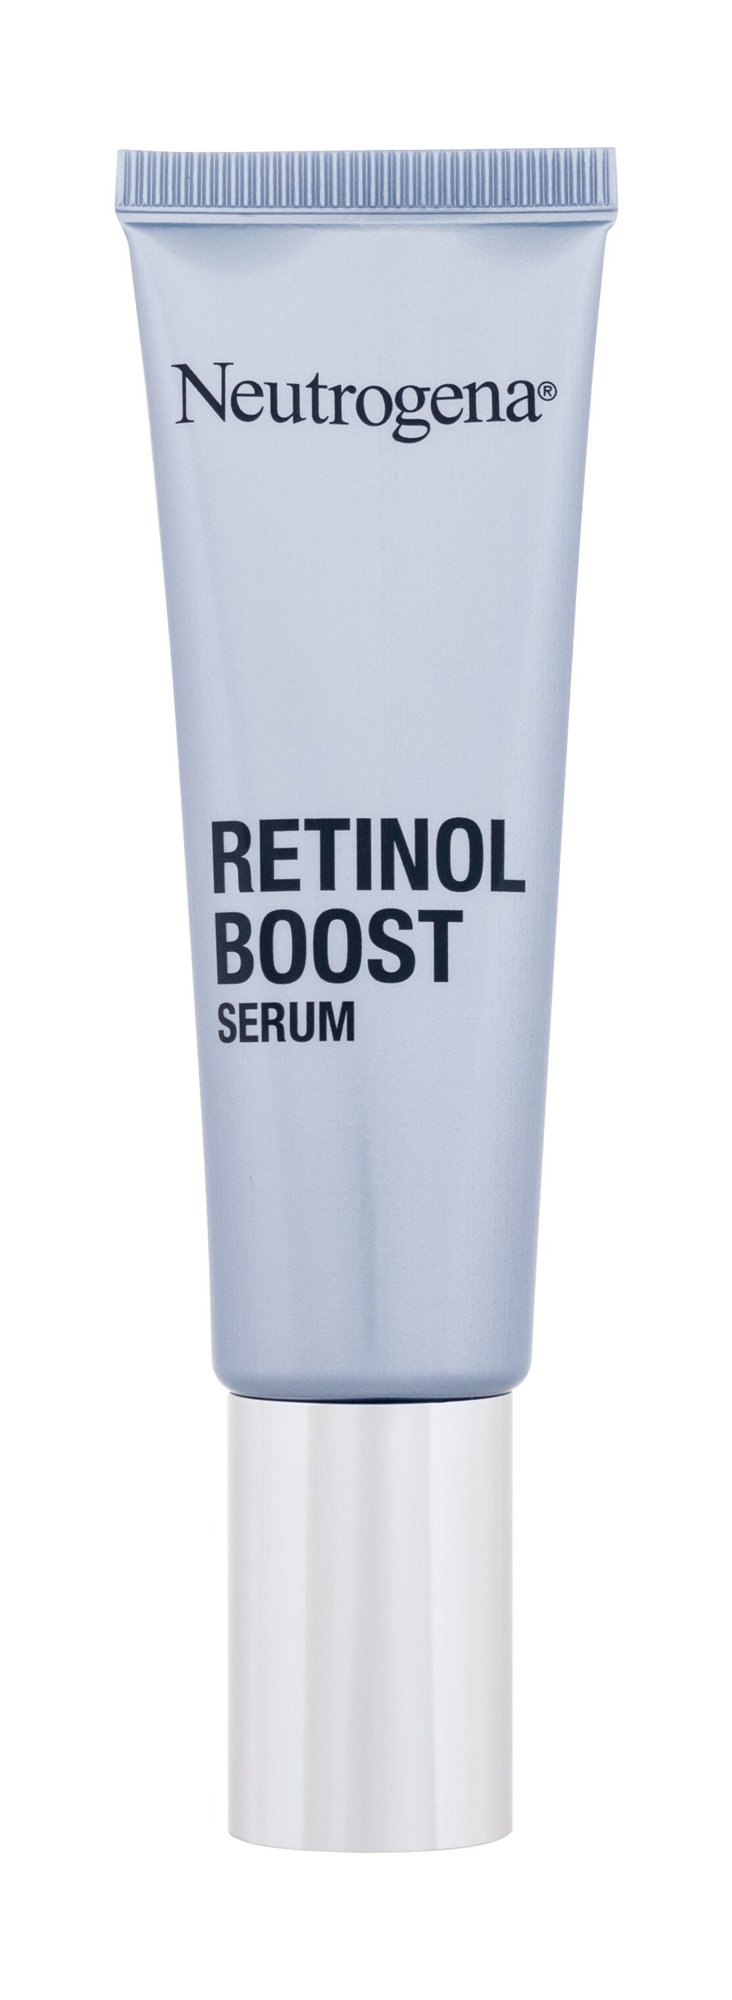 Neutrogena Retinol Boost Serum 30ml Veido serumas